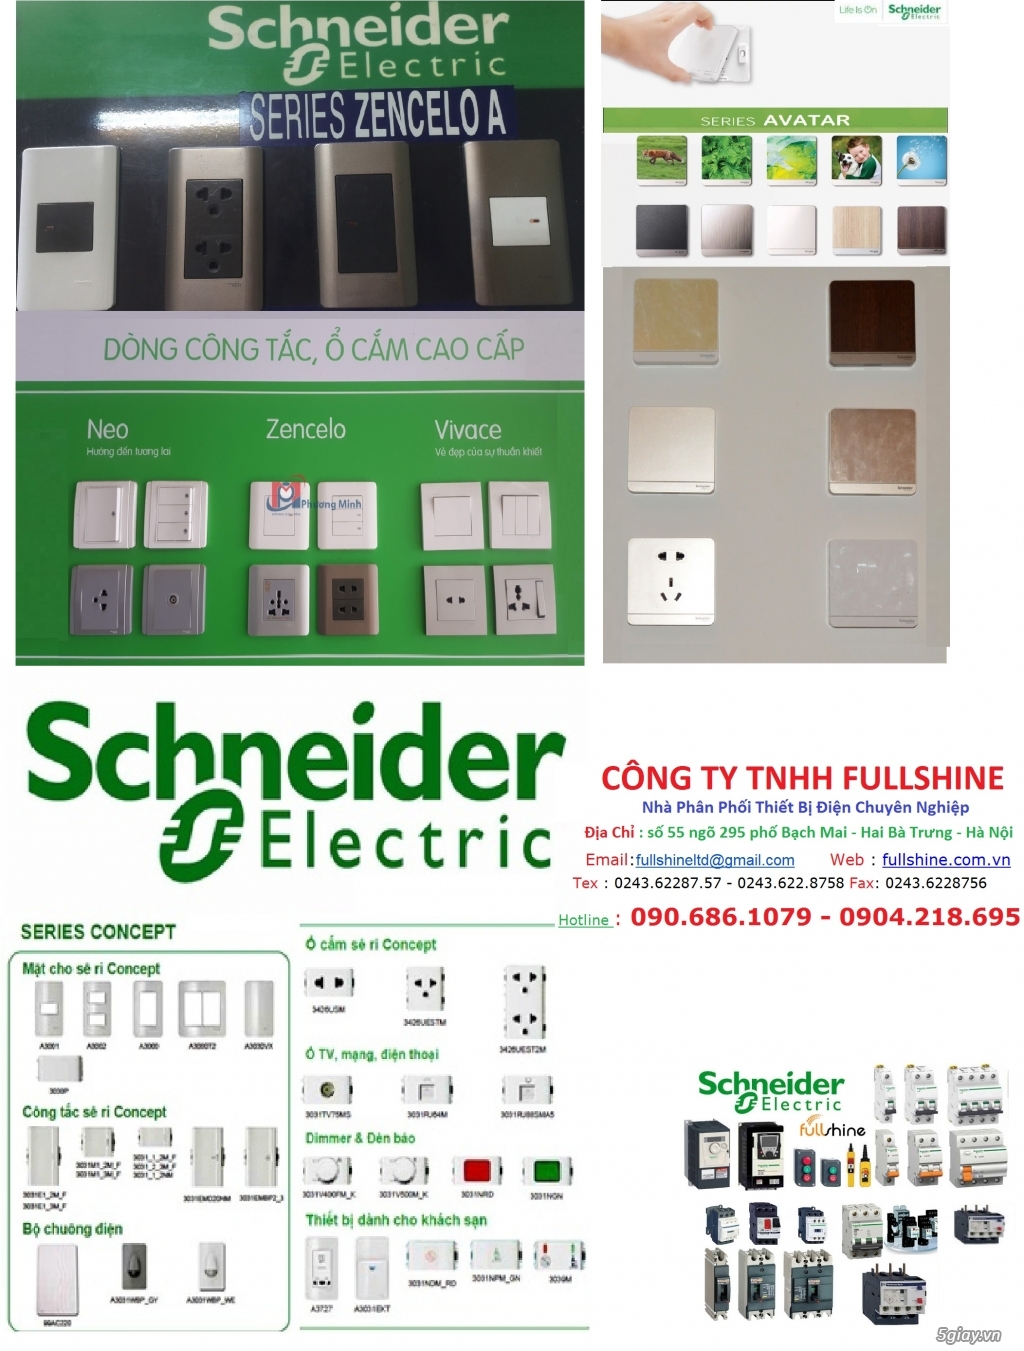 Công Ty Fullshine nhà phân phối thiết bị điện Schneider Uy Tín